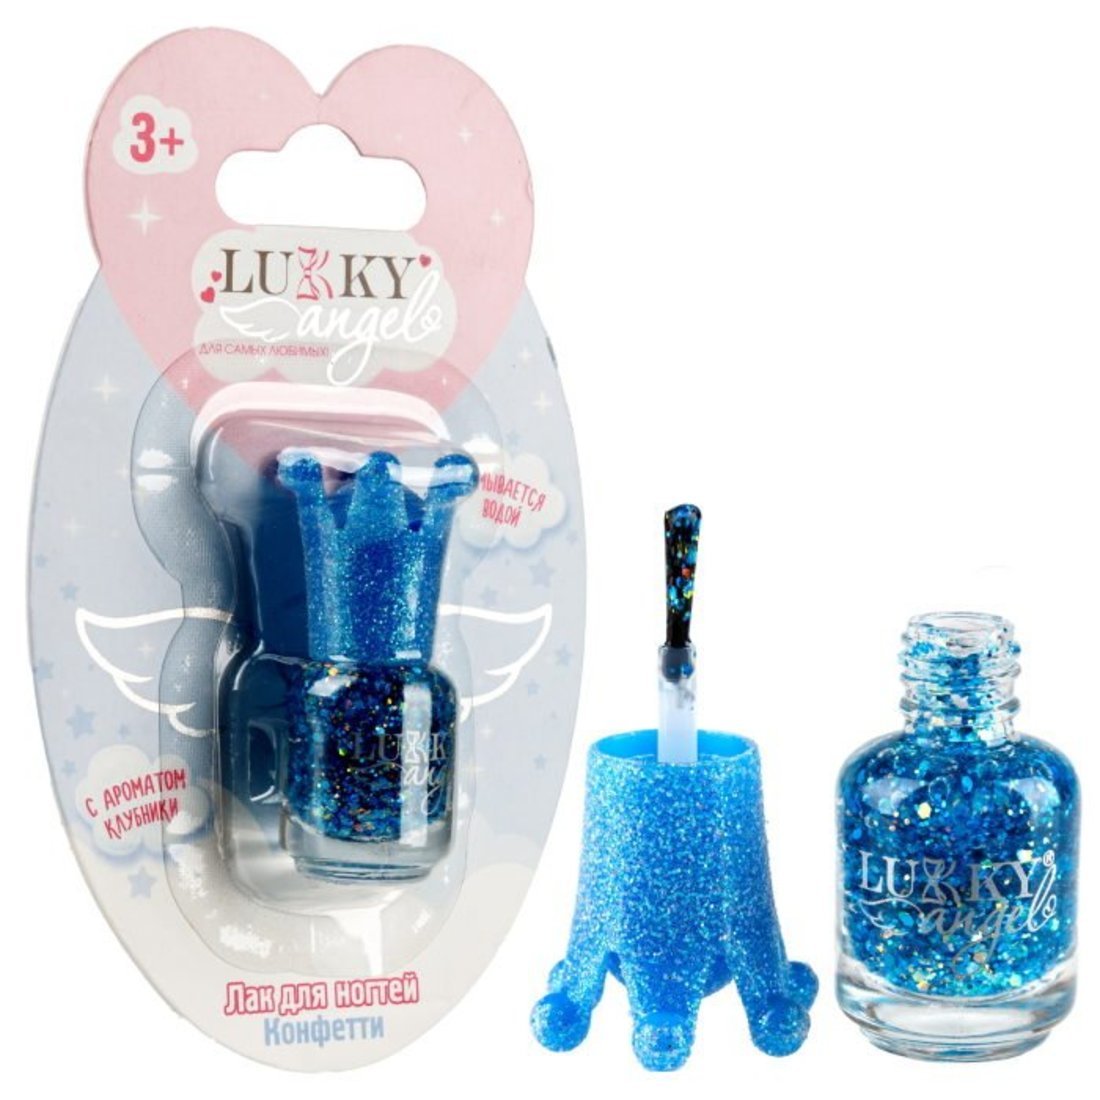 Лак для ногтей Конфетти, смываемый водой, синий с ароматом клубники Lukky Т23507